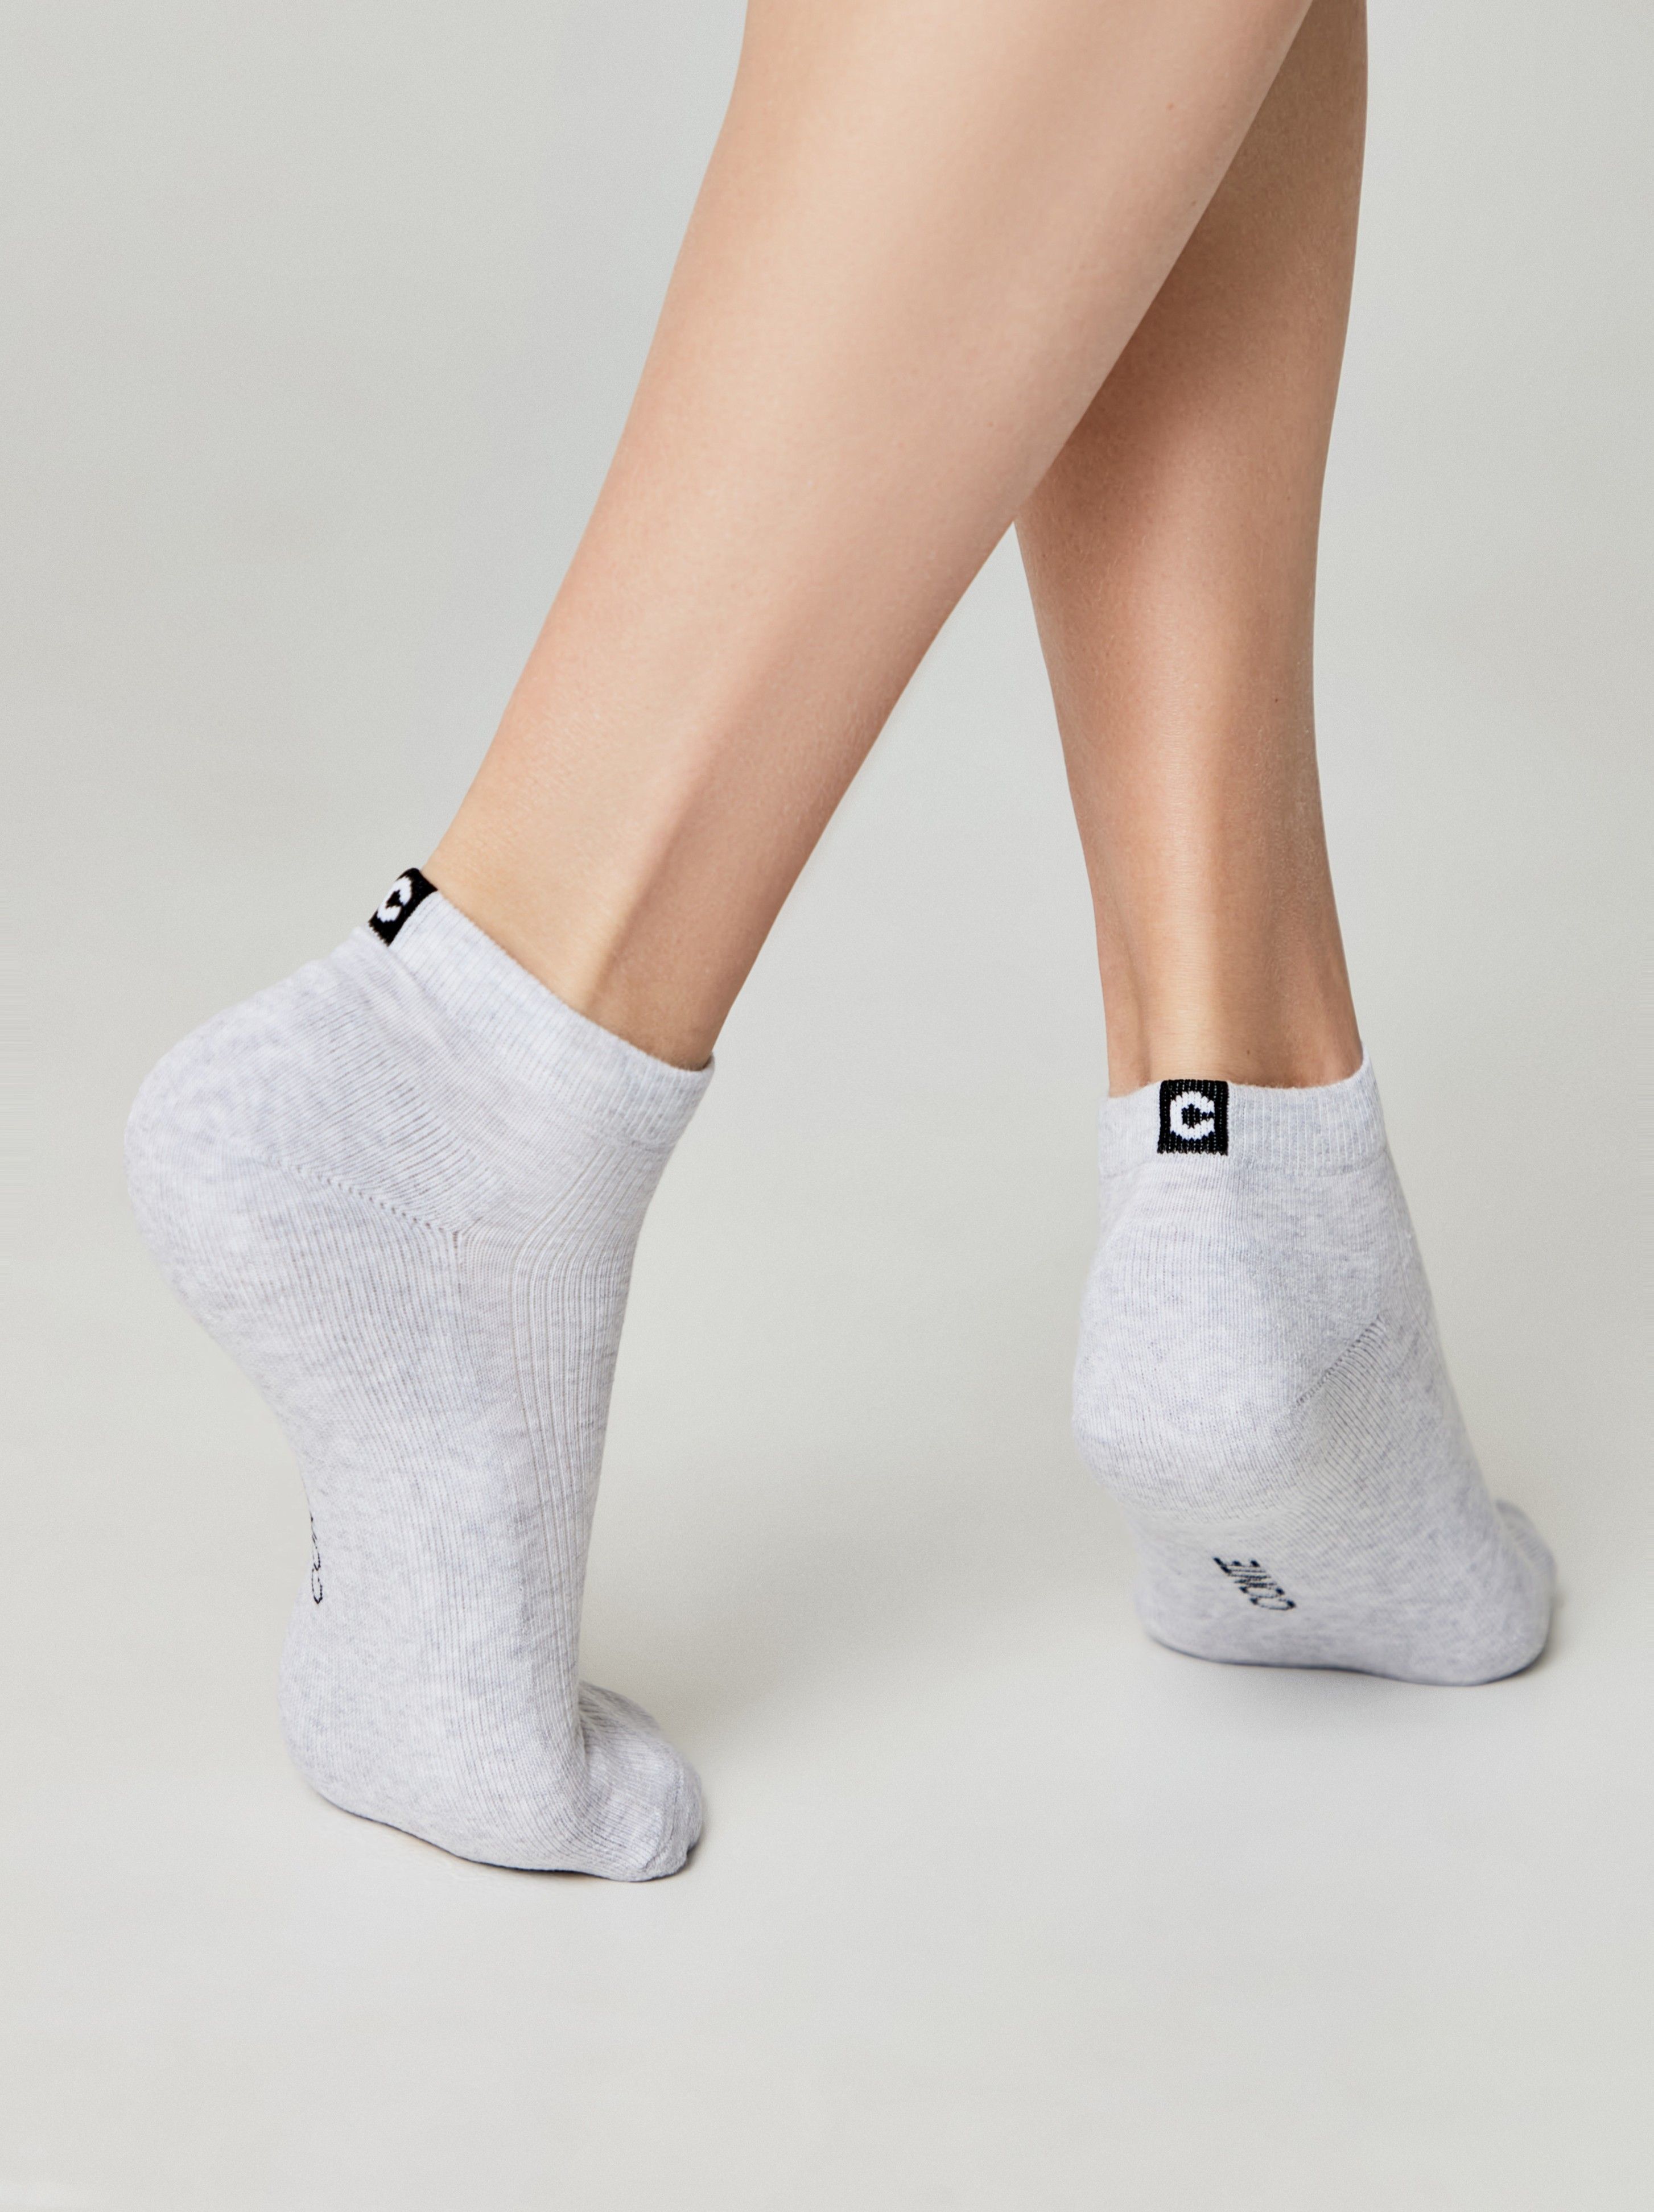 Короткие носки из хлопка с махровой стопой и отсылкой к логотипу бренда Conte ⭐️, цвет черный, размер 36-37 - фото 1